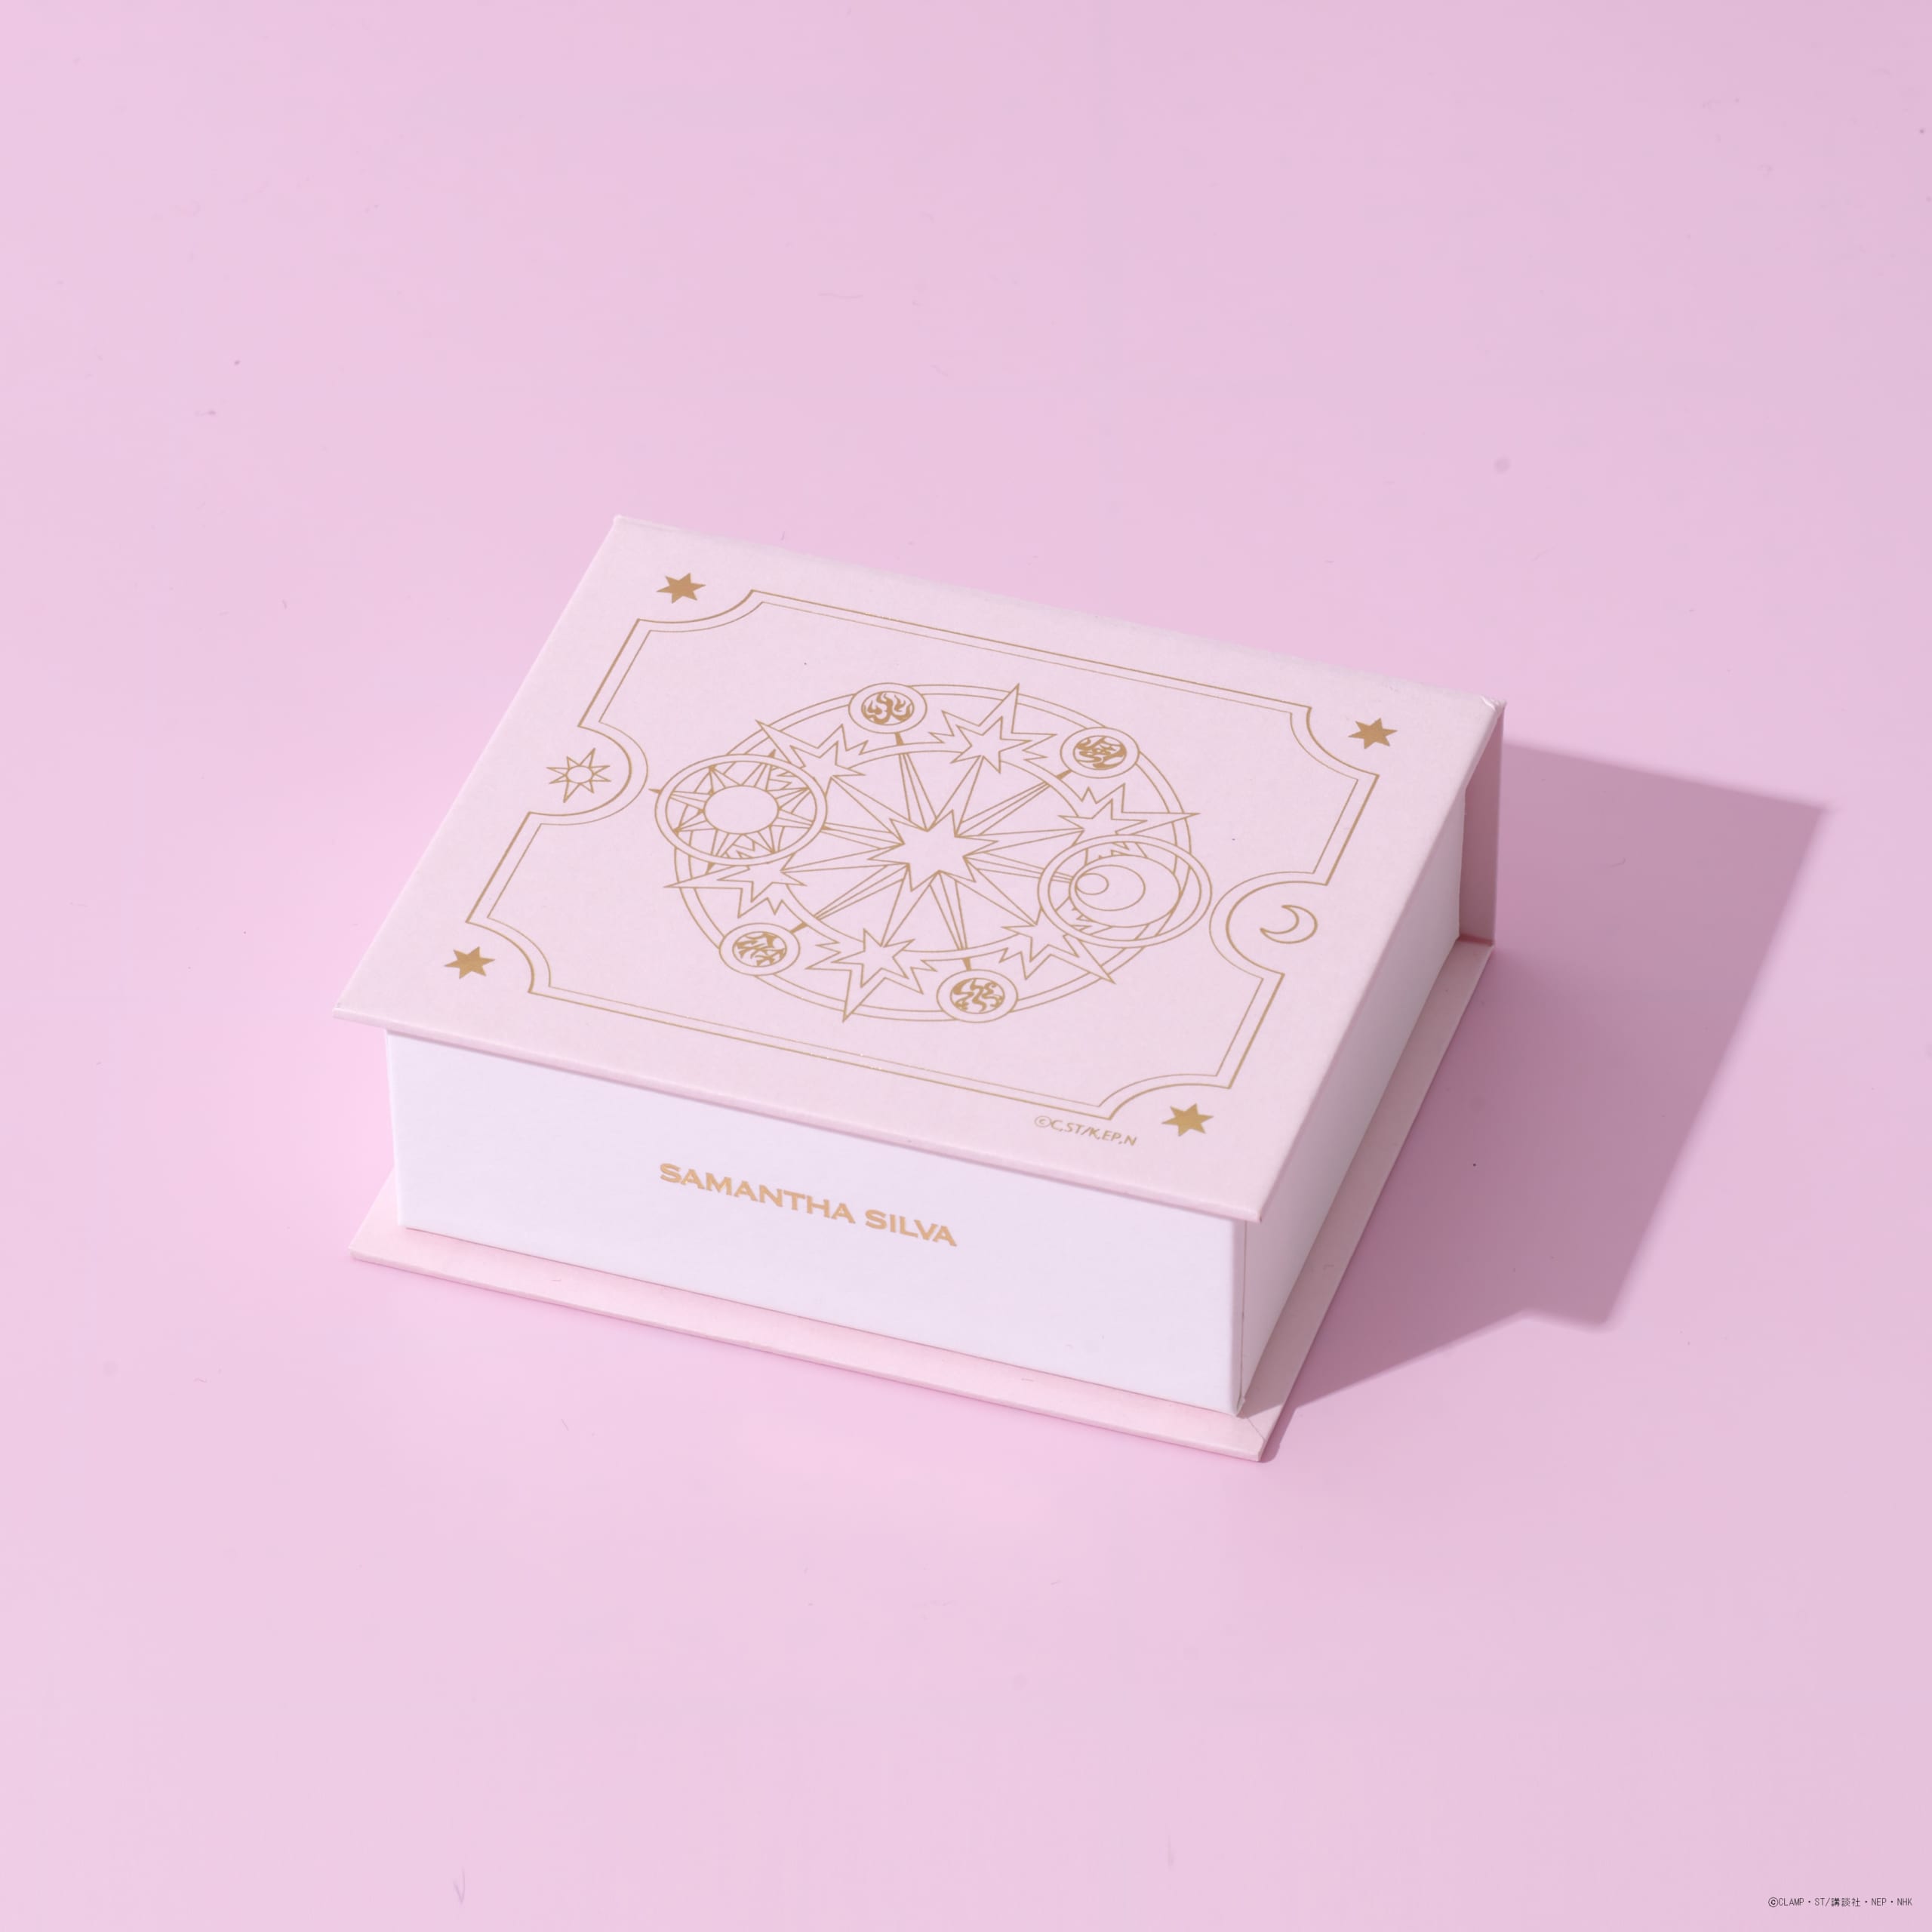 「カードキャプターさくら×サマンサシルヴァ」ジュエリーコレクション第4弾 オリジナルBOX